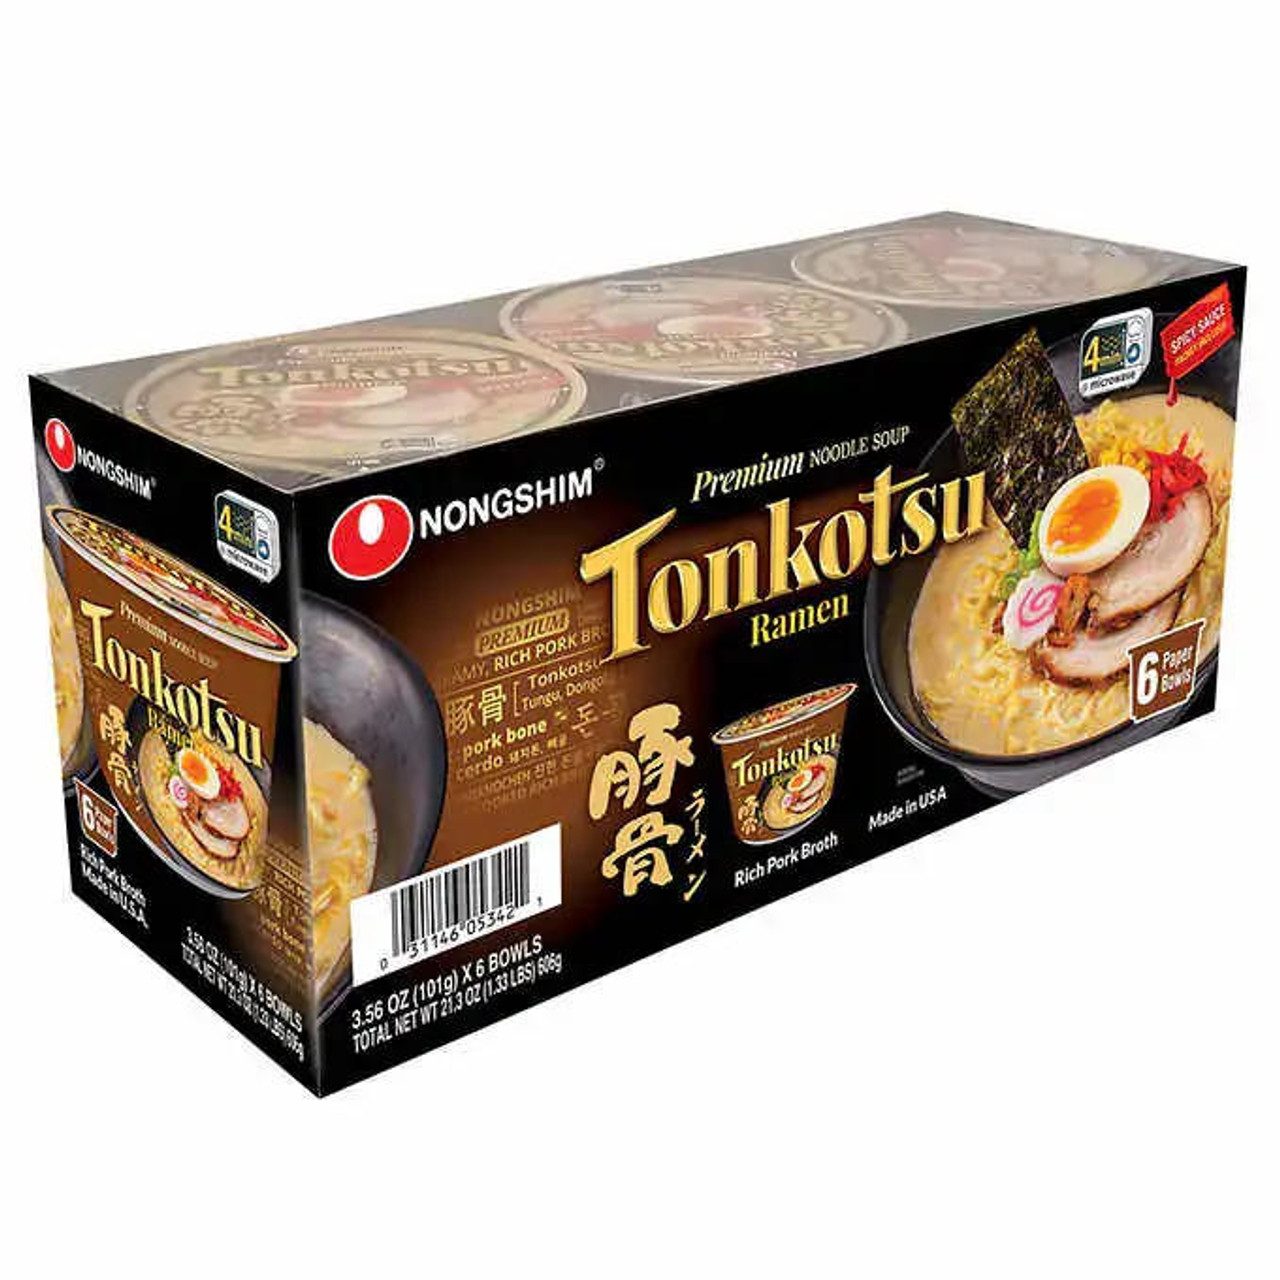 NONG SHIM Nongshim Tonkotsu Ramen 101g (6Pack) | Premium Japanese Style Noodle Soup - Chicken Pieces